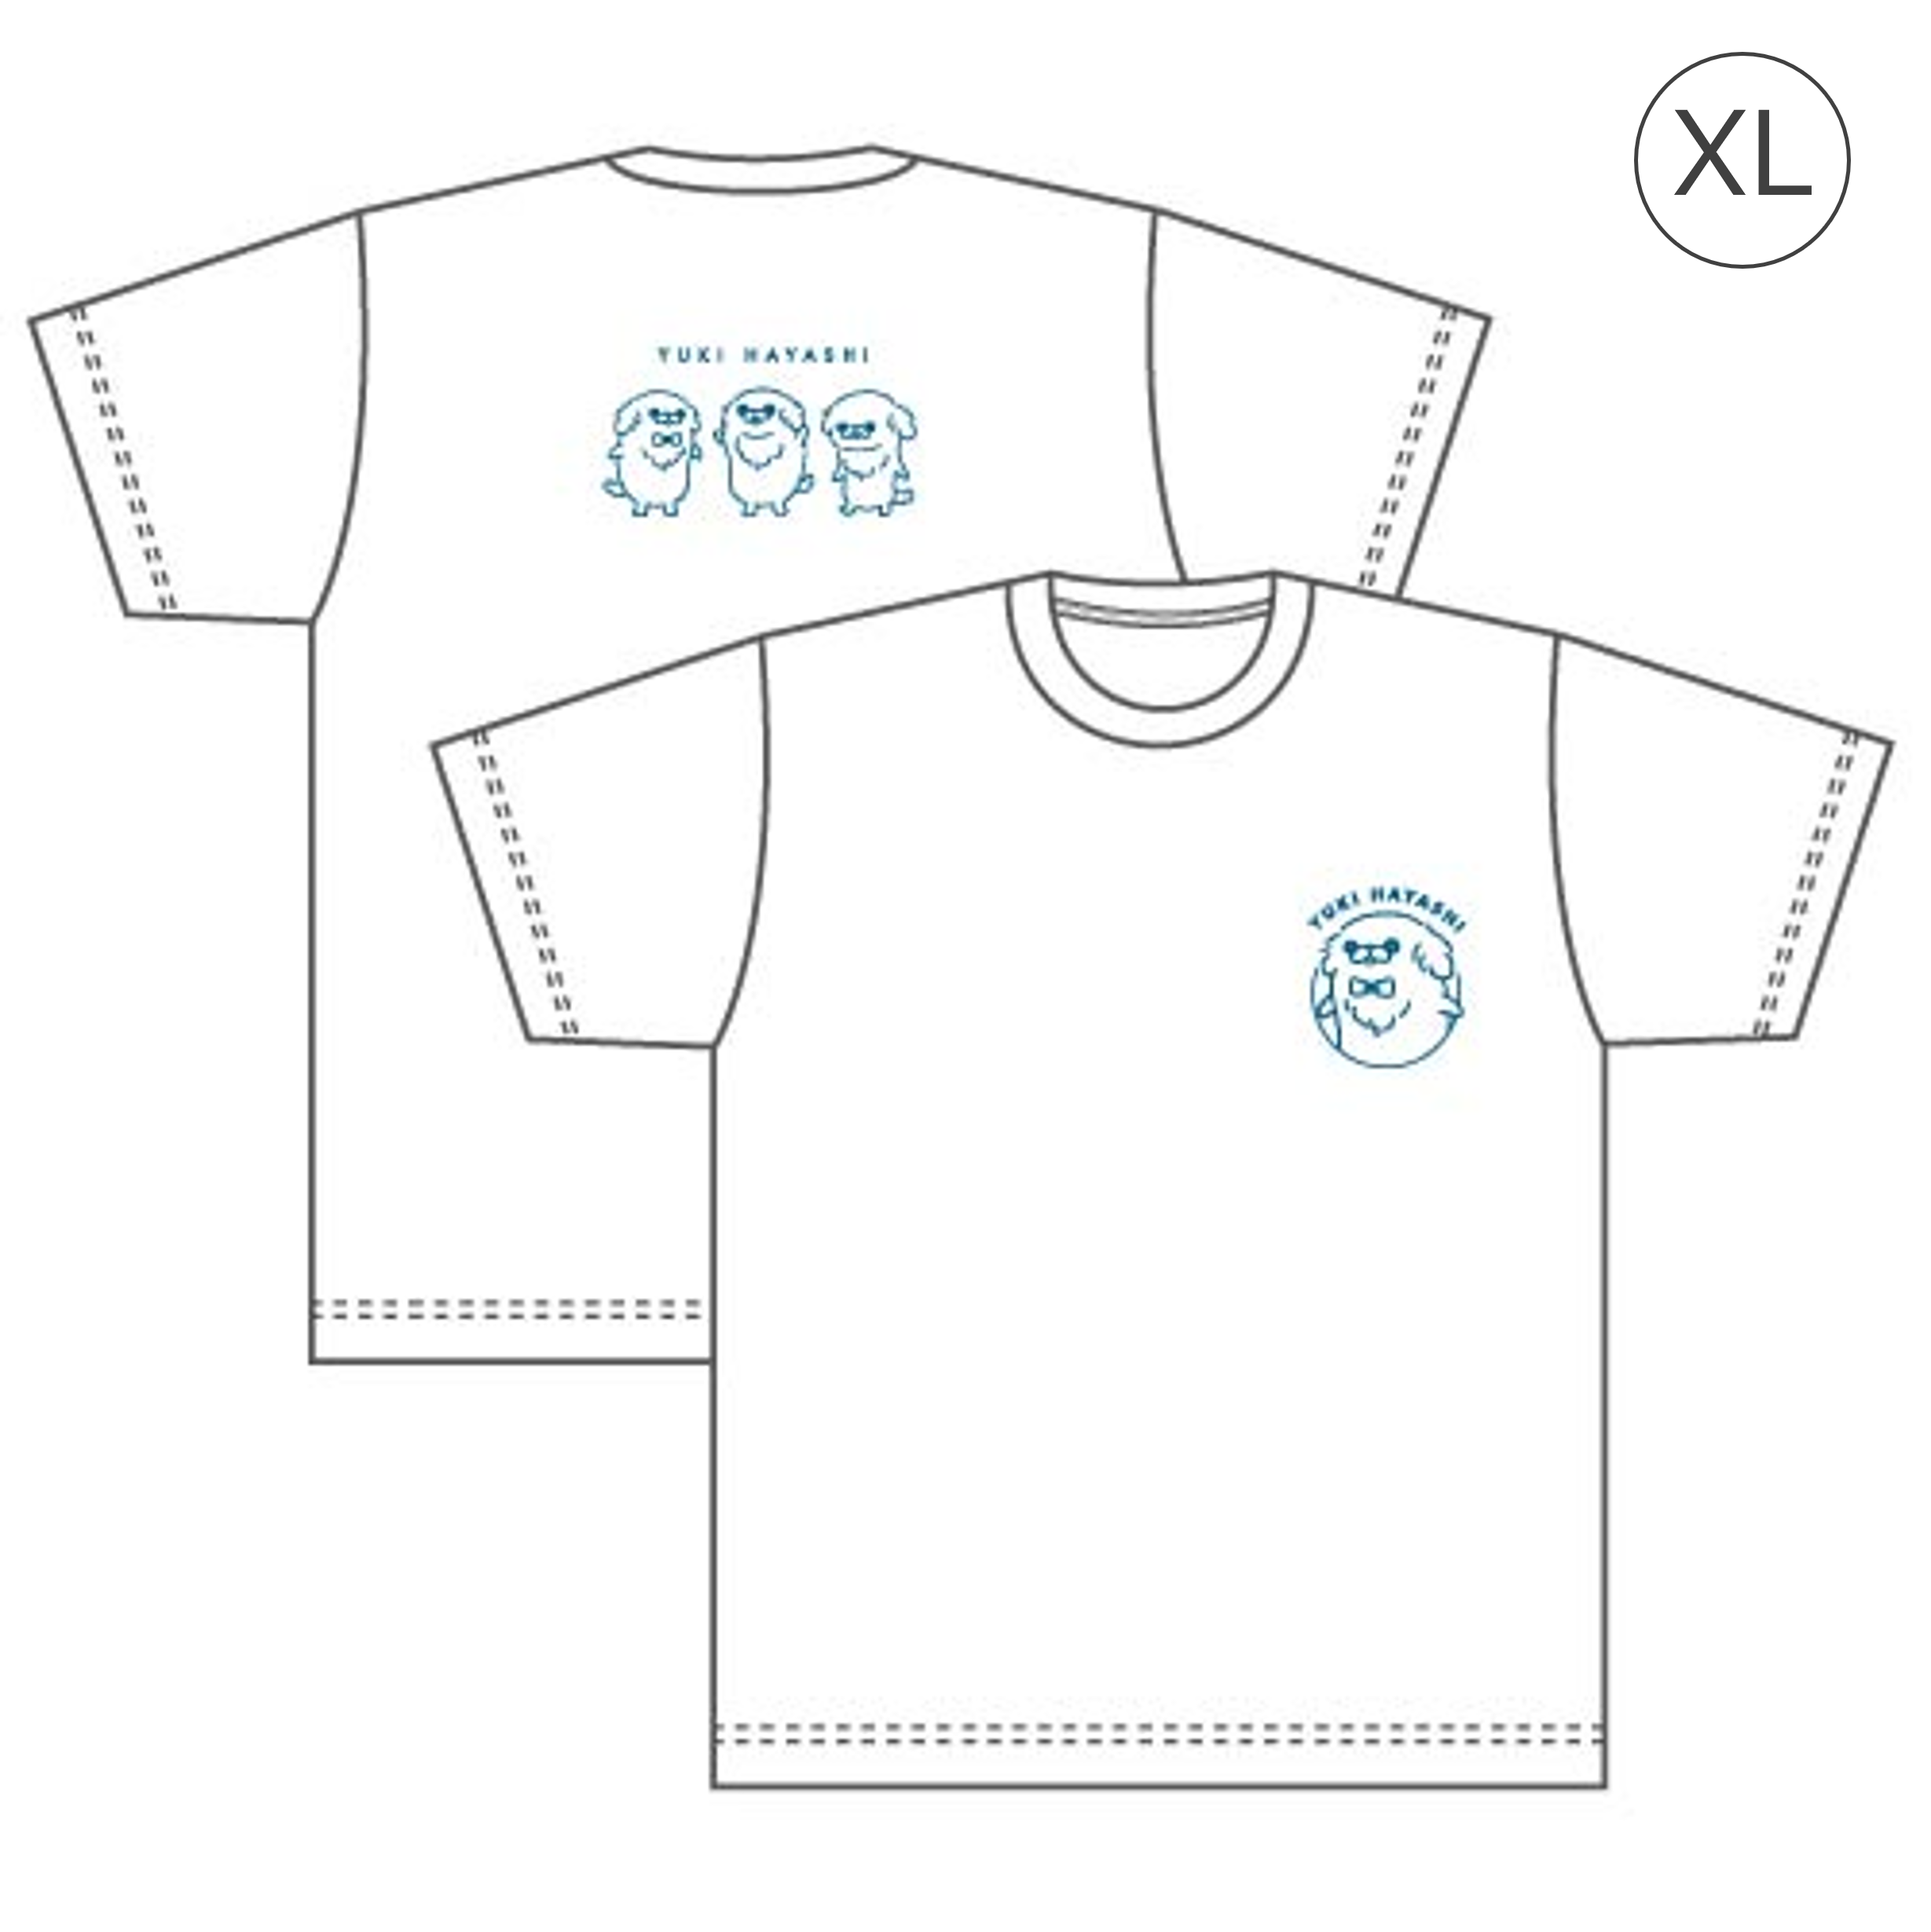 T-shirt (White / XL size)